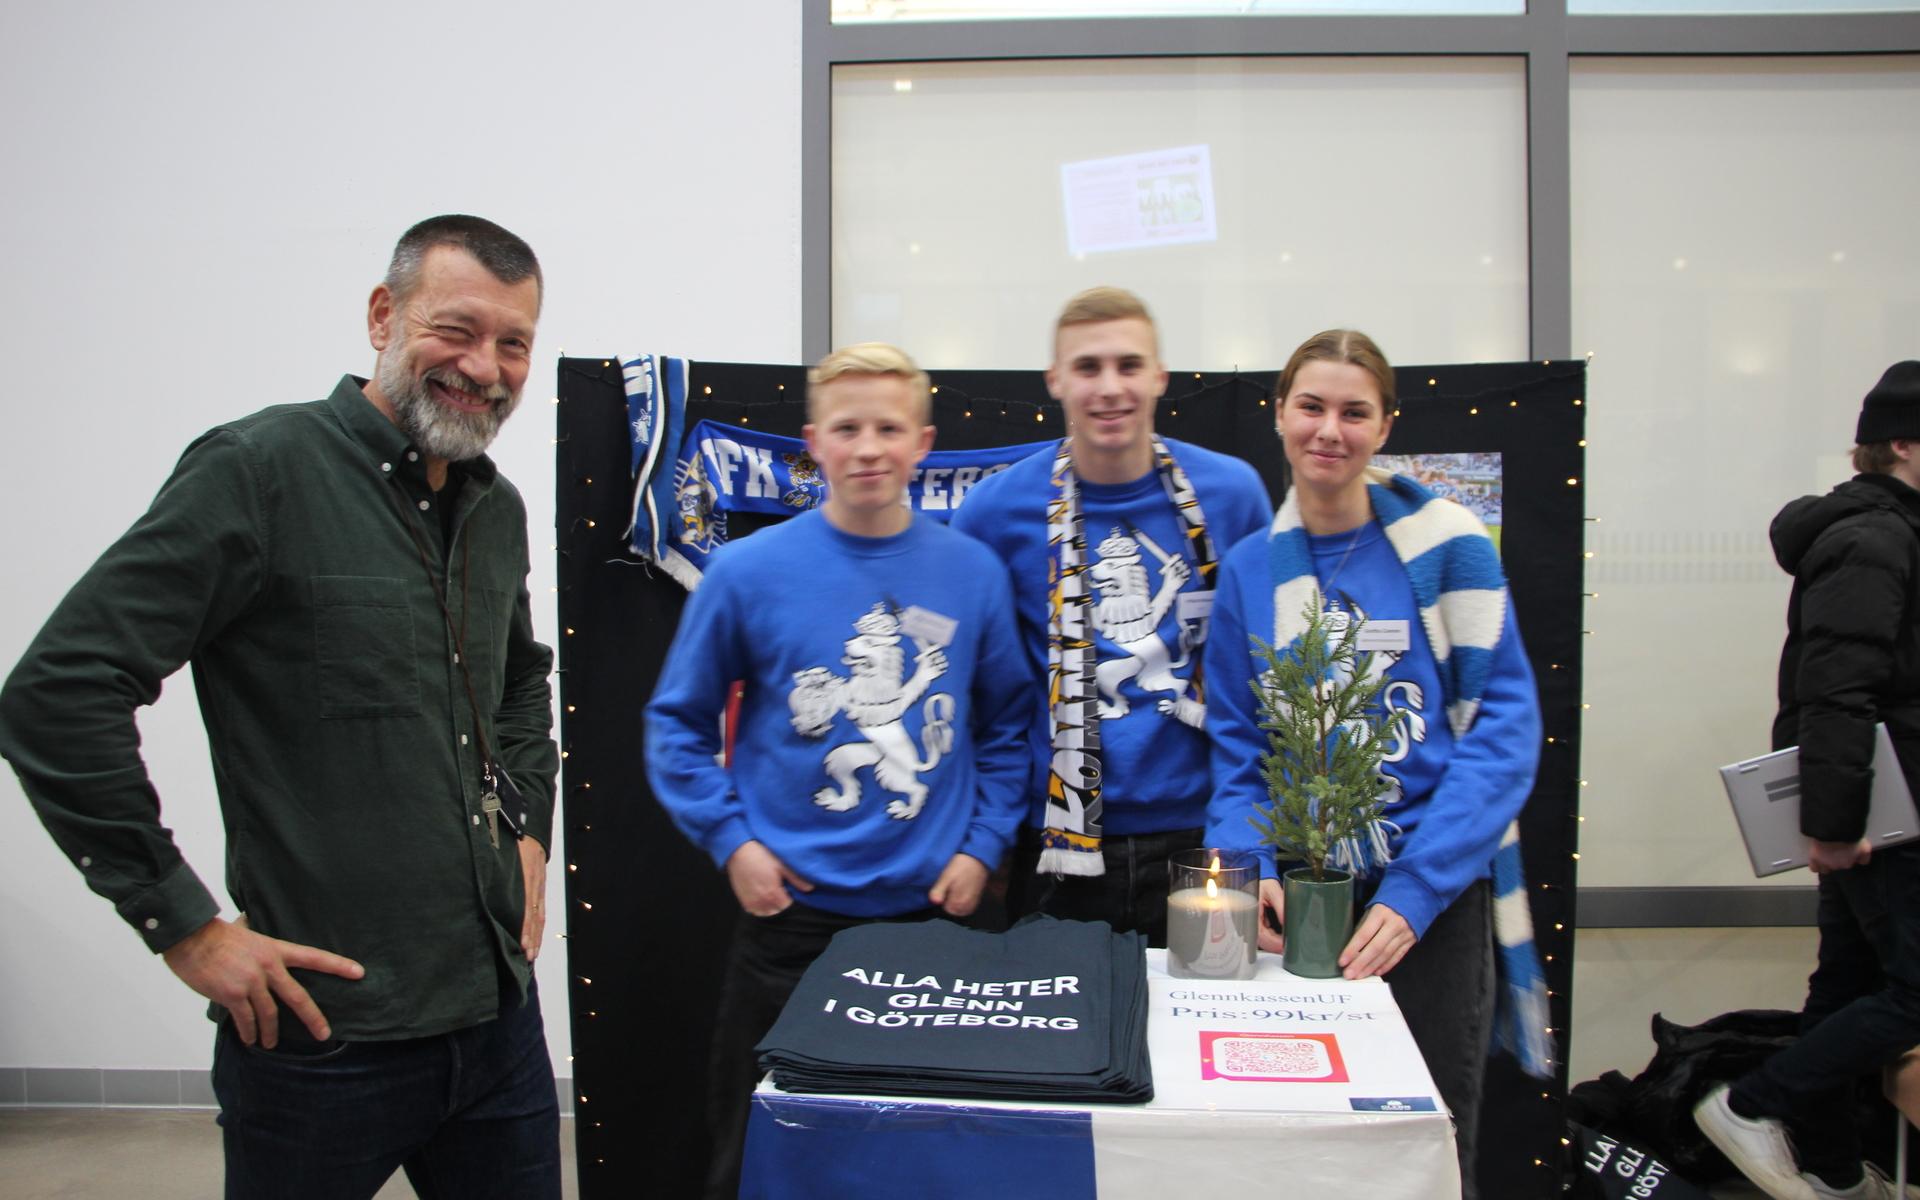 Elias Aronsson, Philip Nilsson och Gretha Coenen älskar IFK Göteborg och det märks i deras produkt - en blåvit kasse med texten ”Alla heter Glenn i Göteborg”.